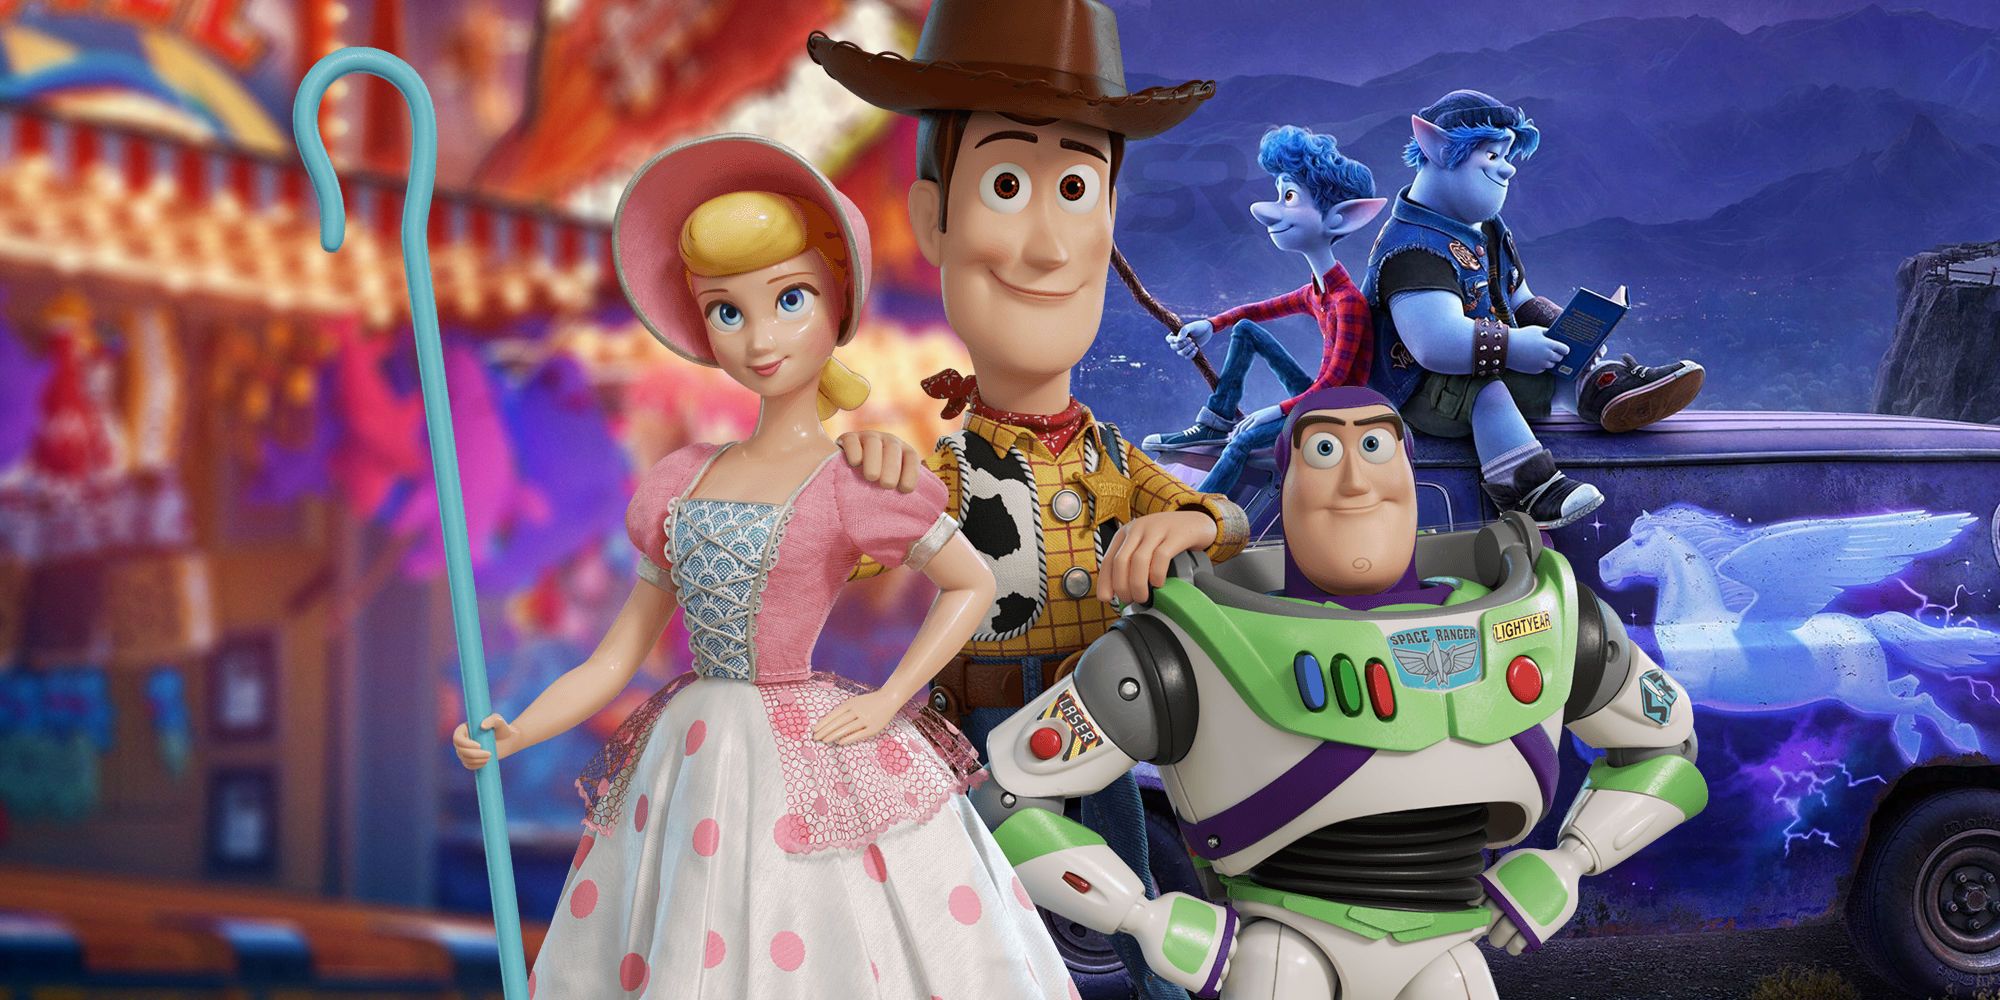 Pixars Onward Movie Was Teased In Toy Story 4